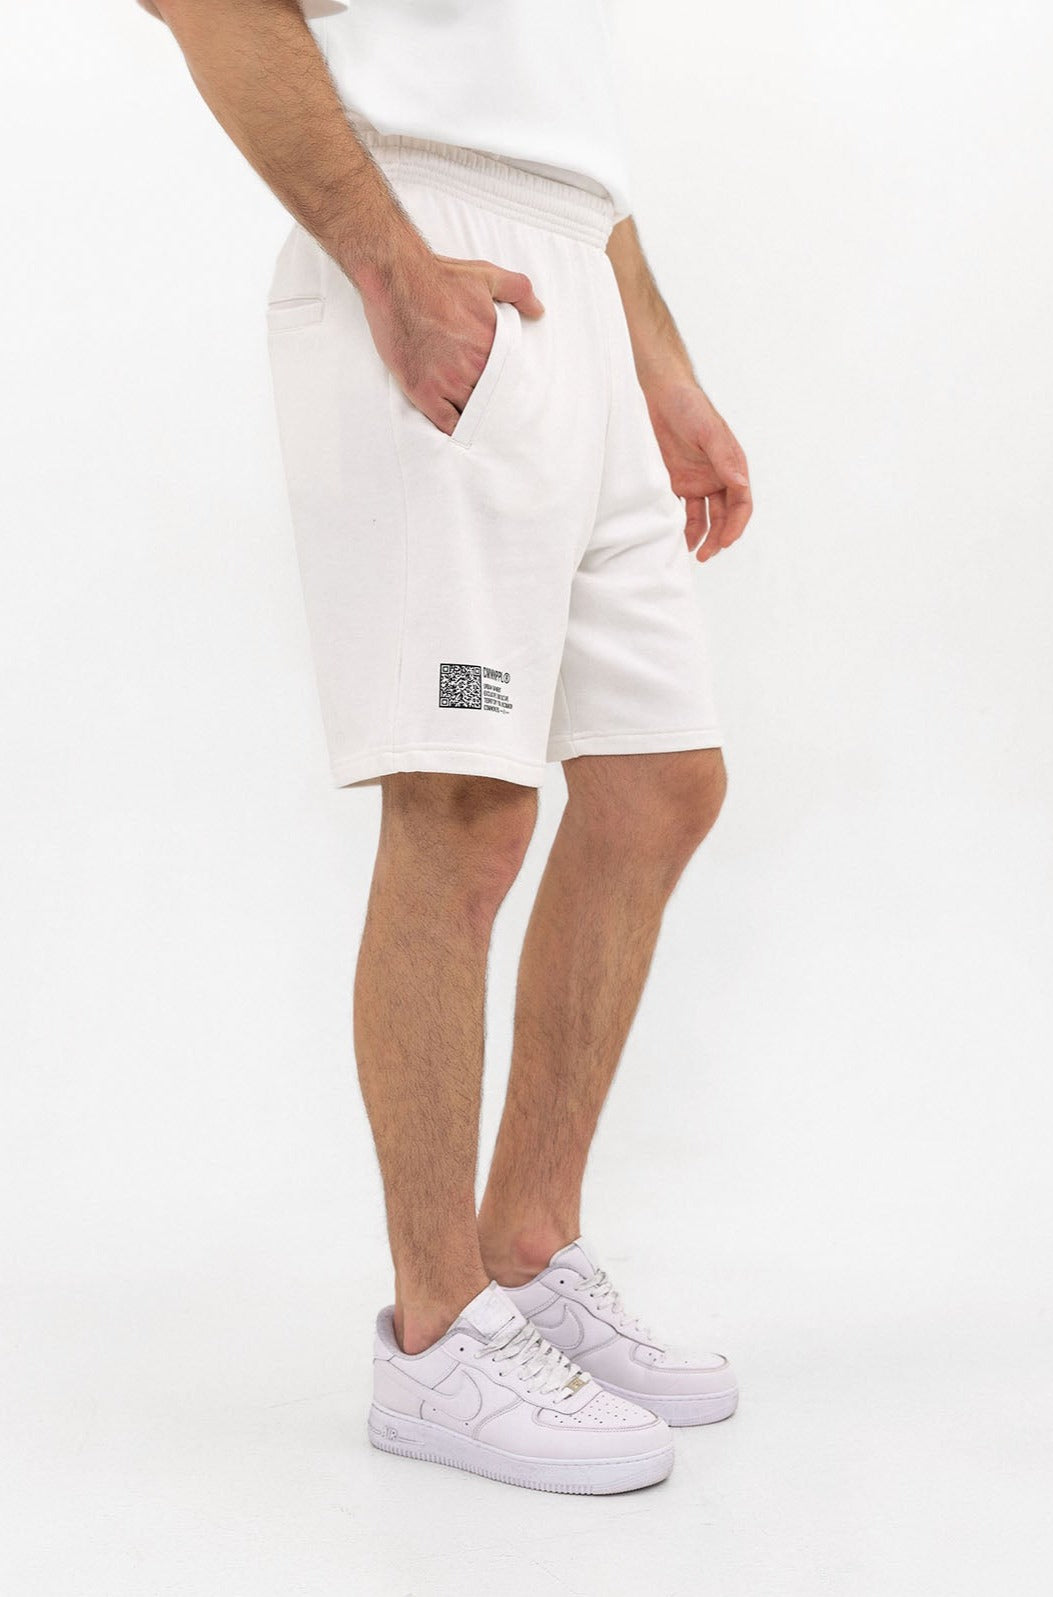 Shorts - Off-white